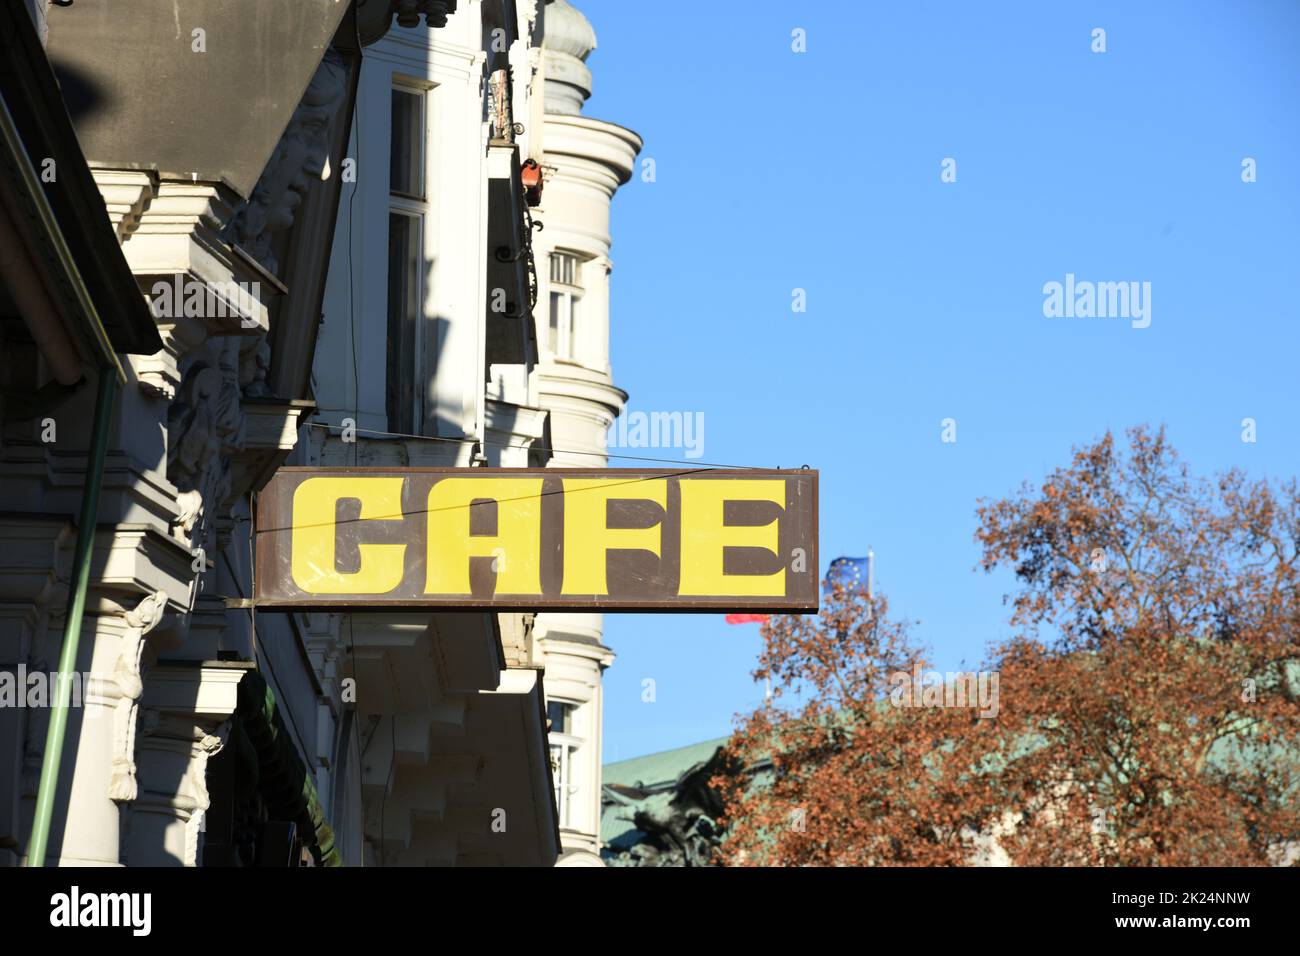 Schild eines Kaffeehauses à Wien Österreich, Europa - signe d'un café à Vienne Autriche, Europe Banque D'Images